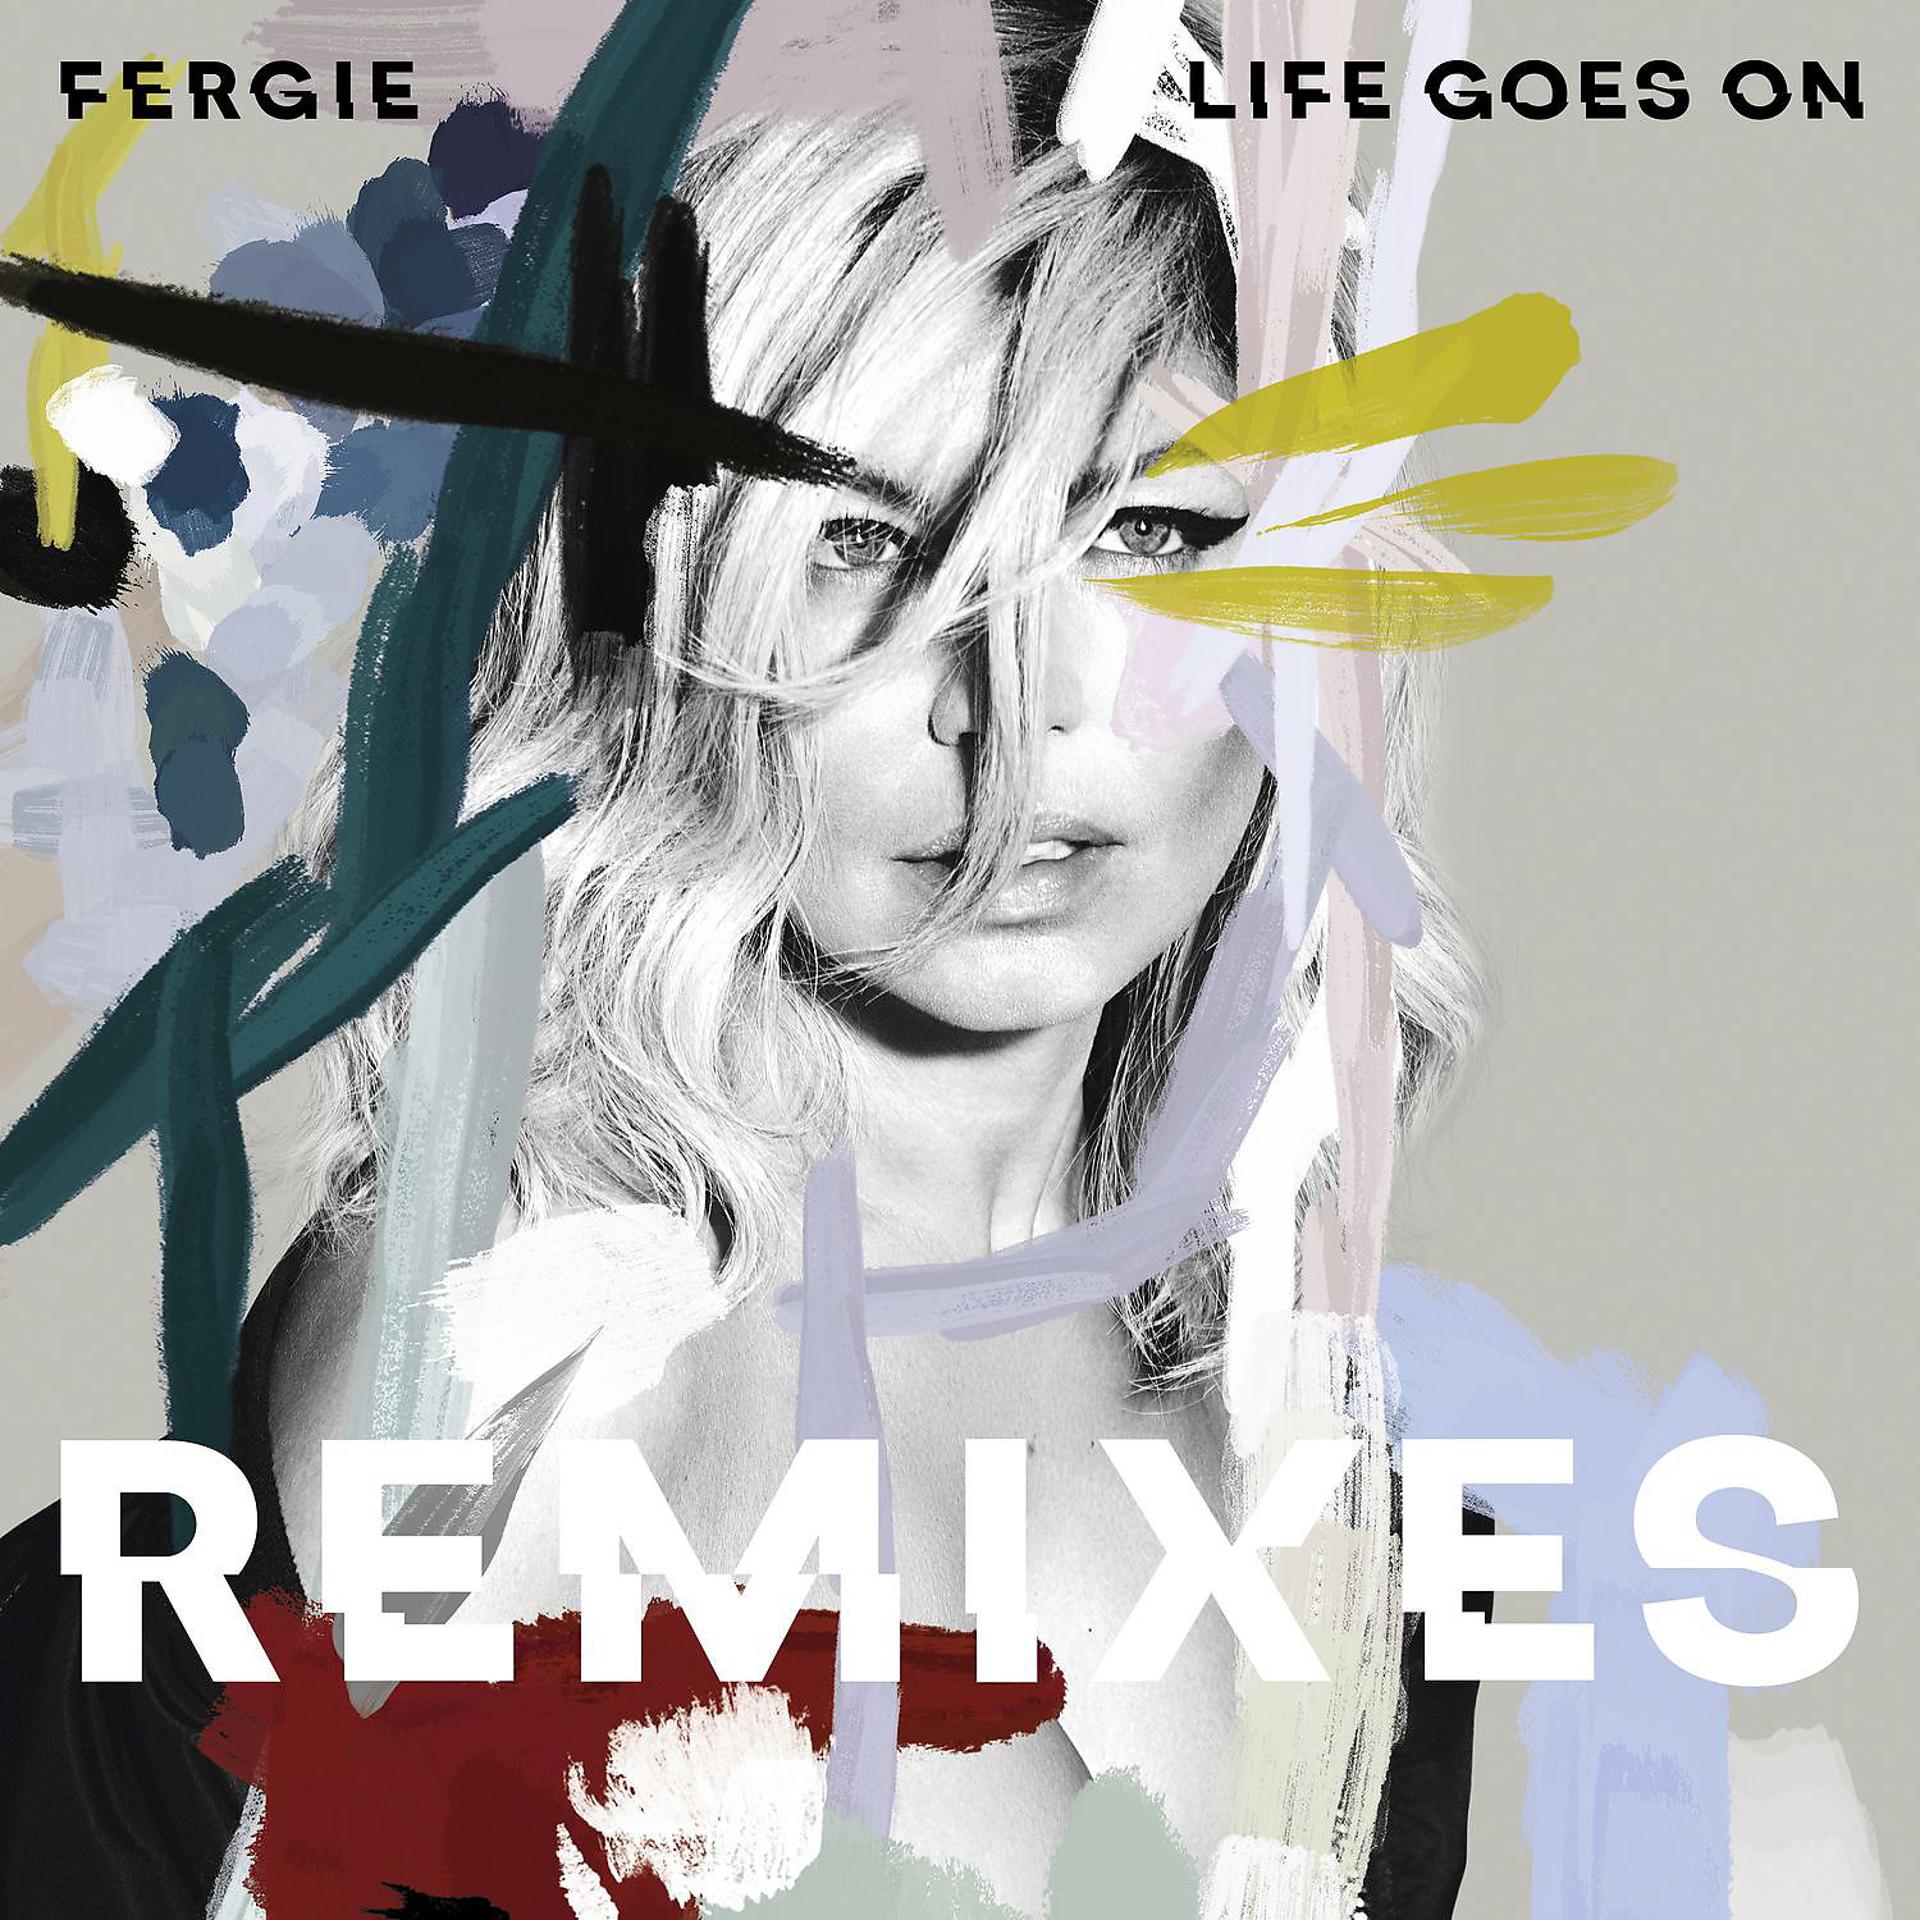 Гоу лайф. Life goes on Ферги. Fergie альбомы. Ферги обложка. Обложки от альбомов Fergie.